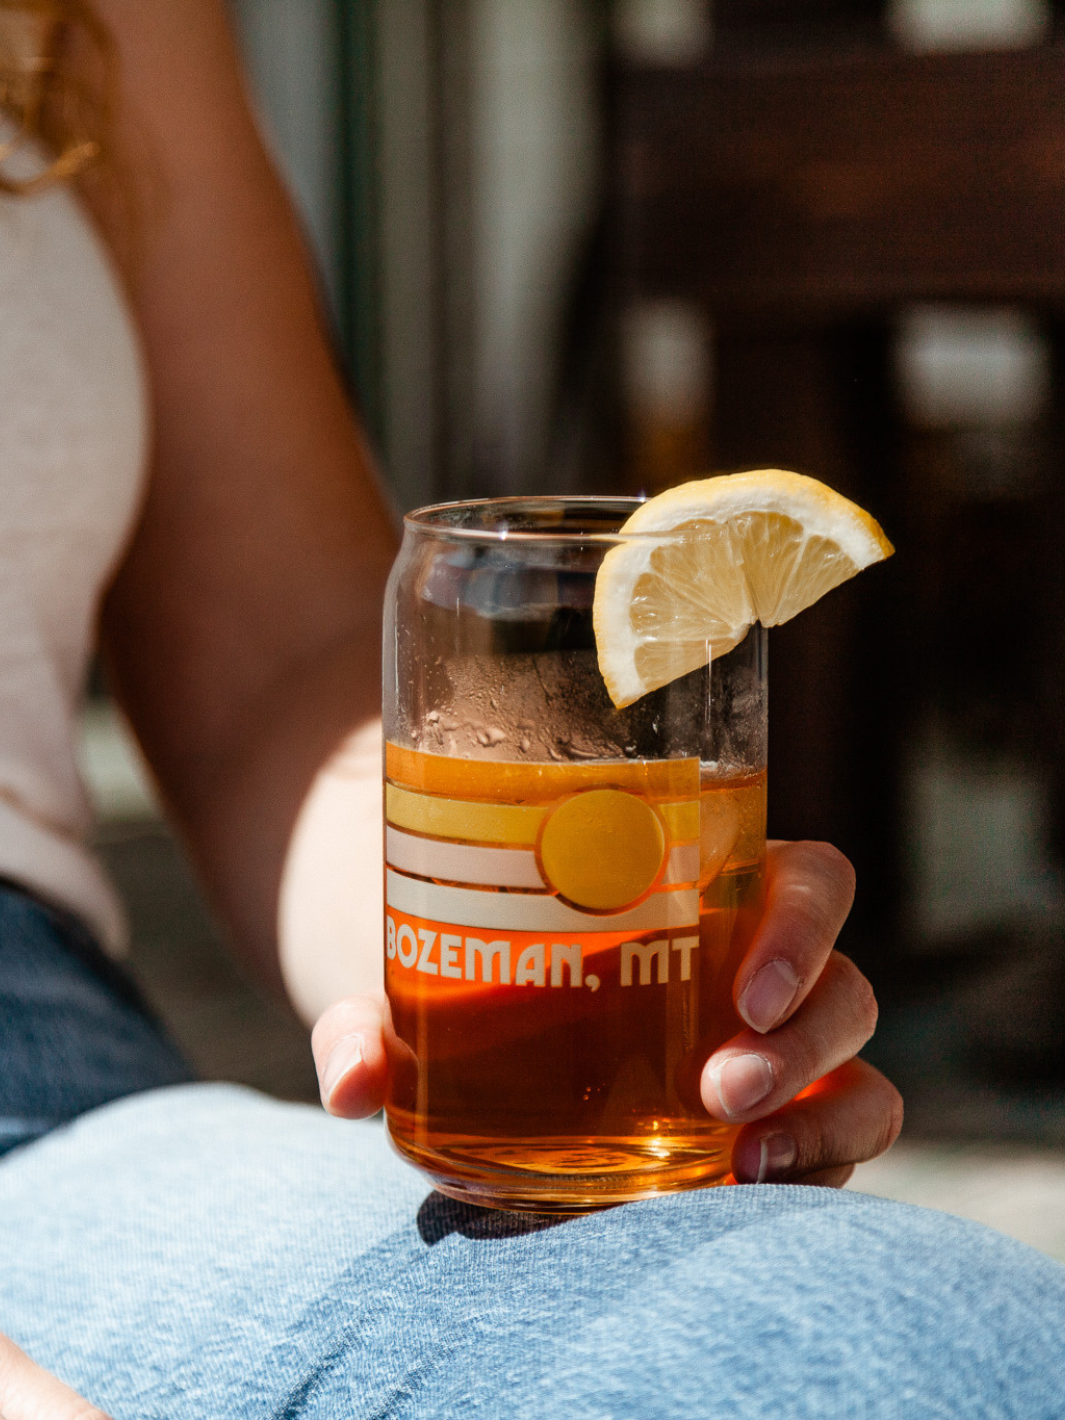 Bozeman, Montana beer glass with iced tea and lemon